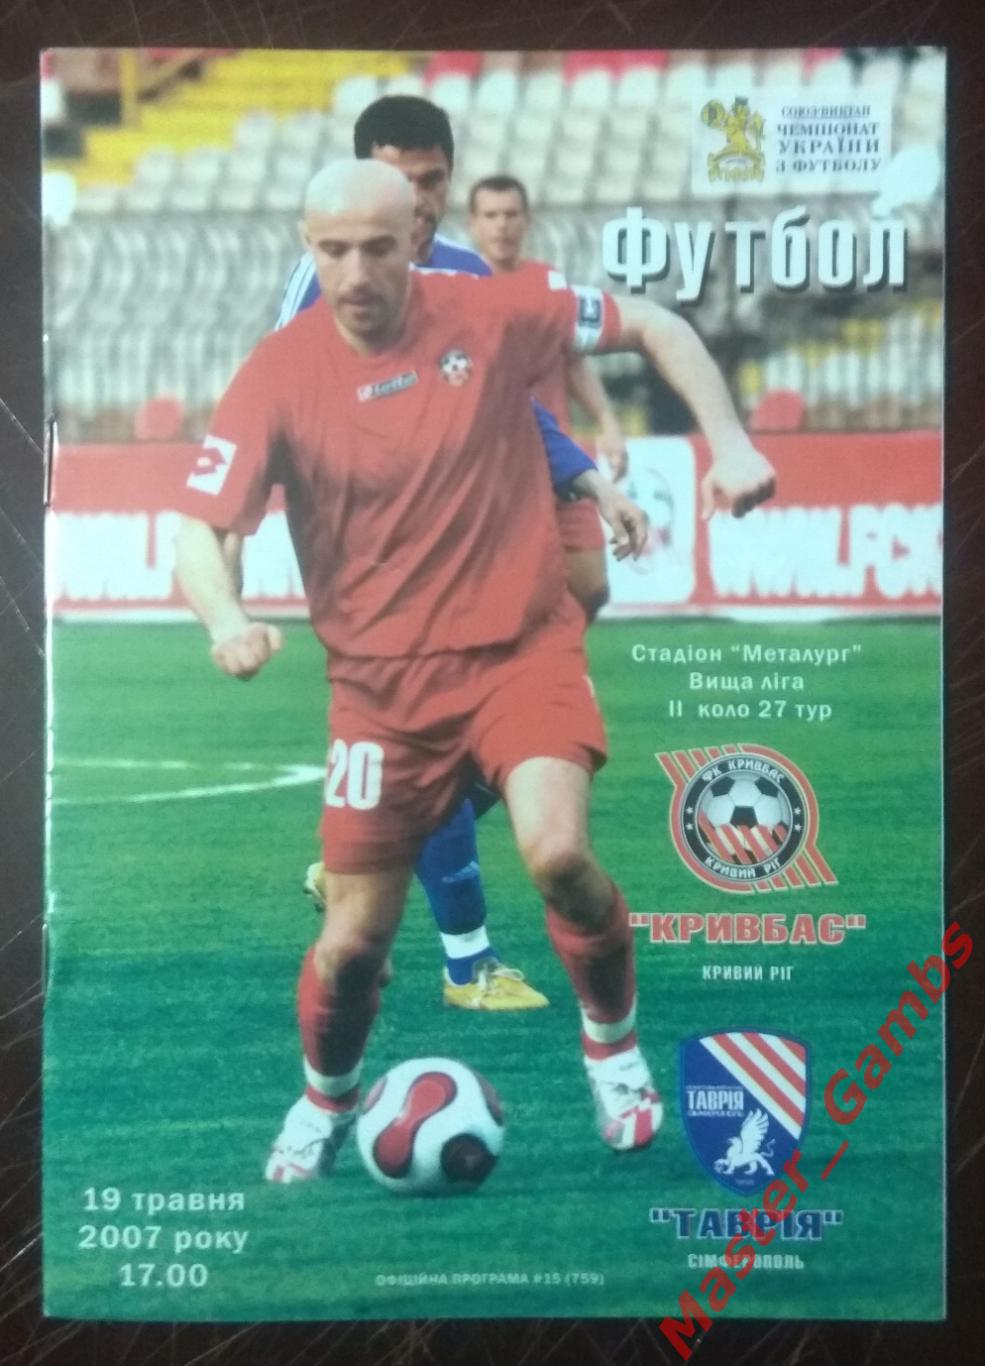 Кривбасс Кривой Рог - Таврия Симферополь 2006/2007*